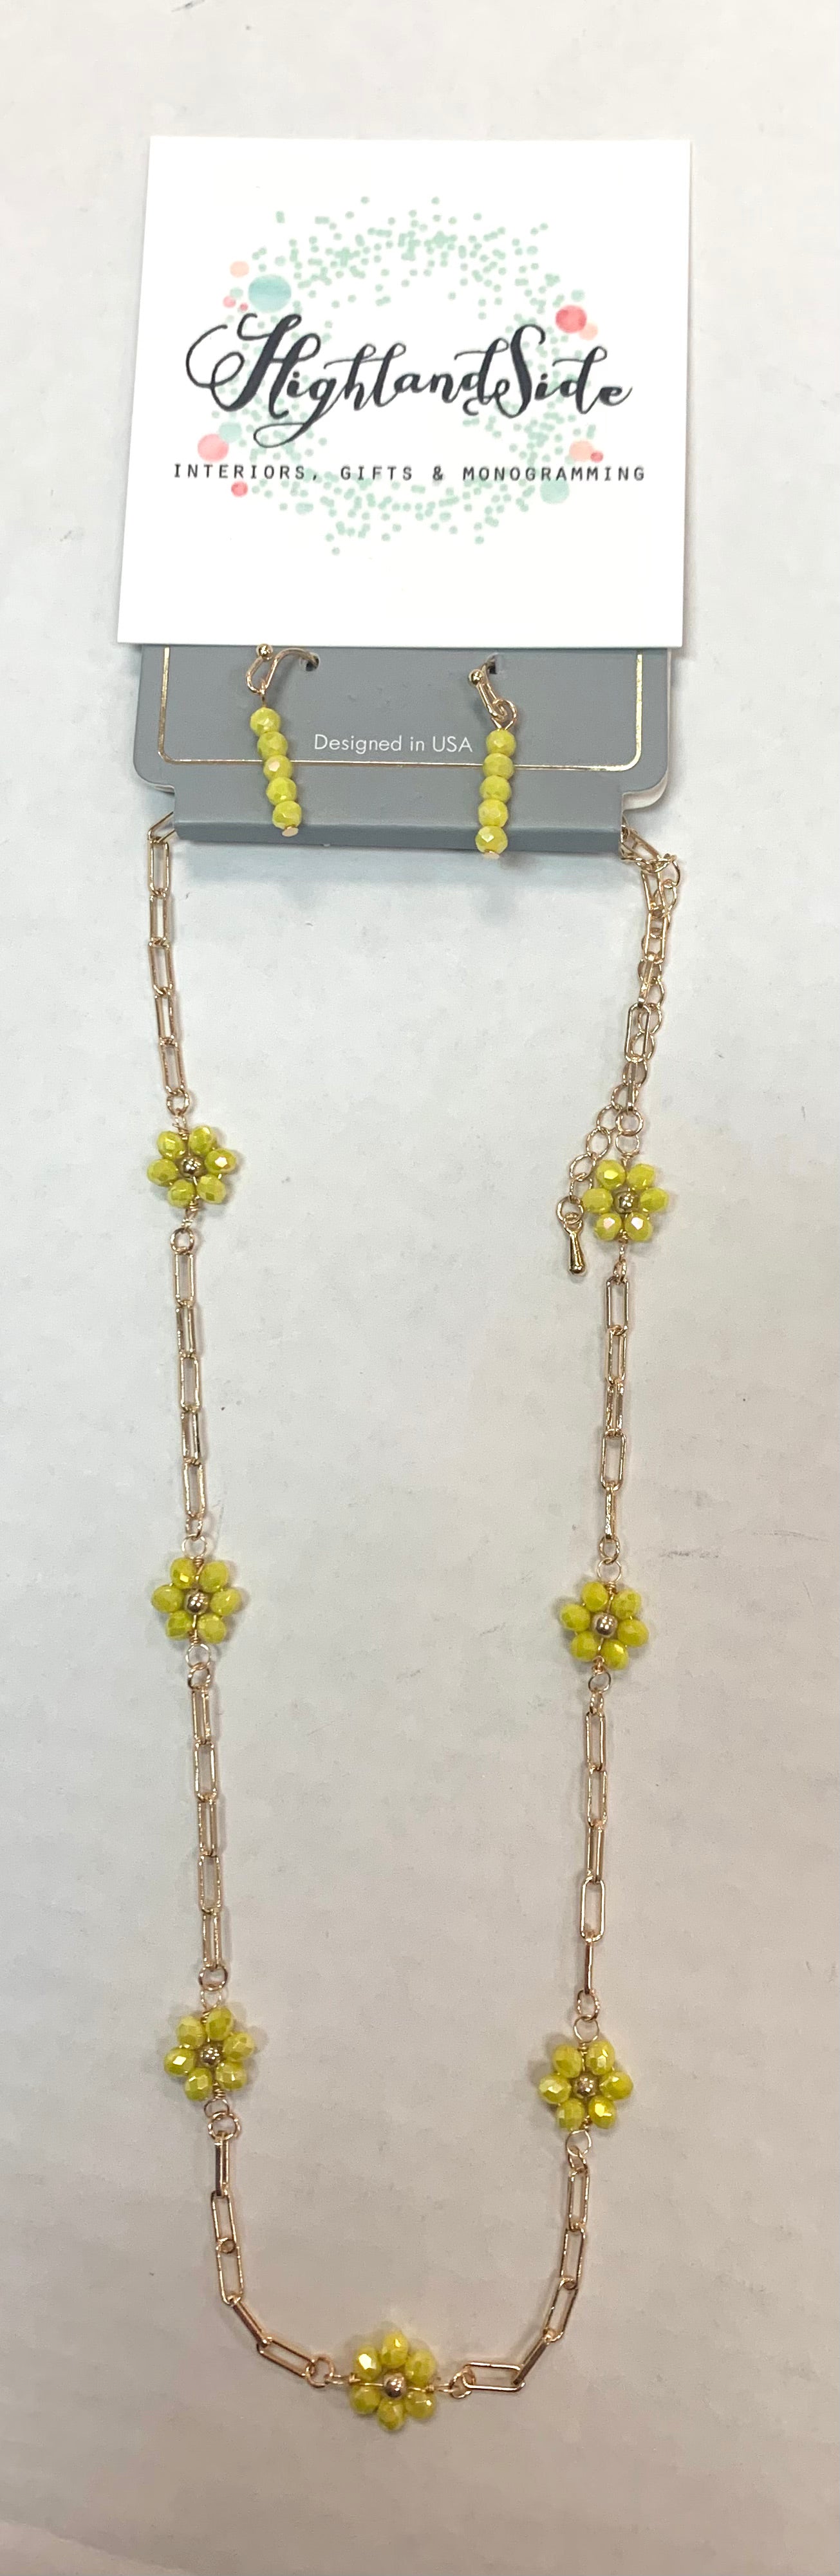 Flower & Chain Necklace w/ Earrings